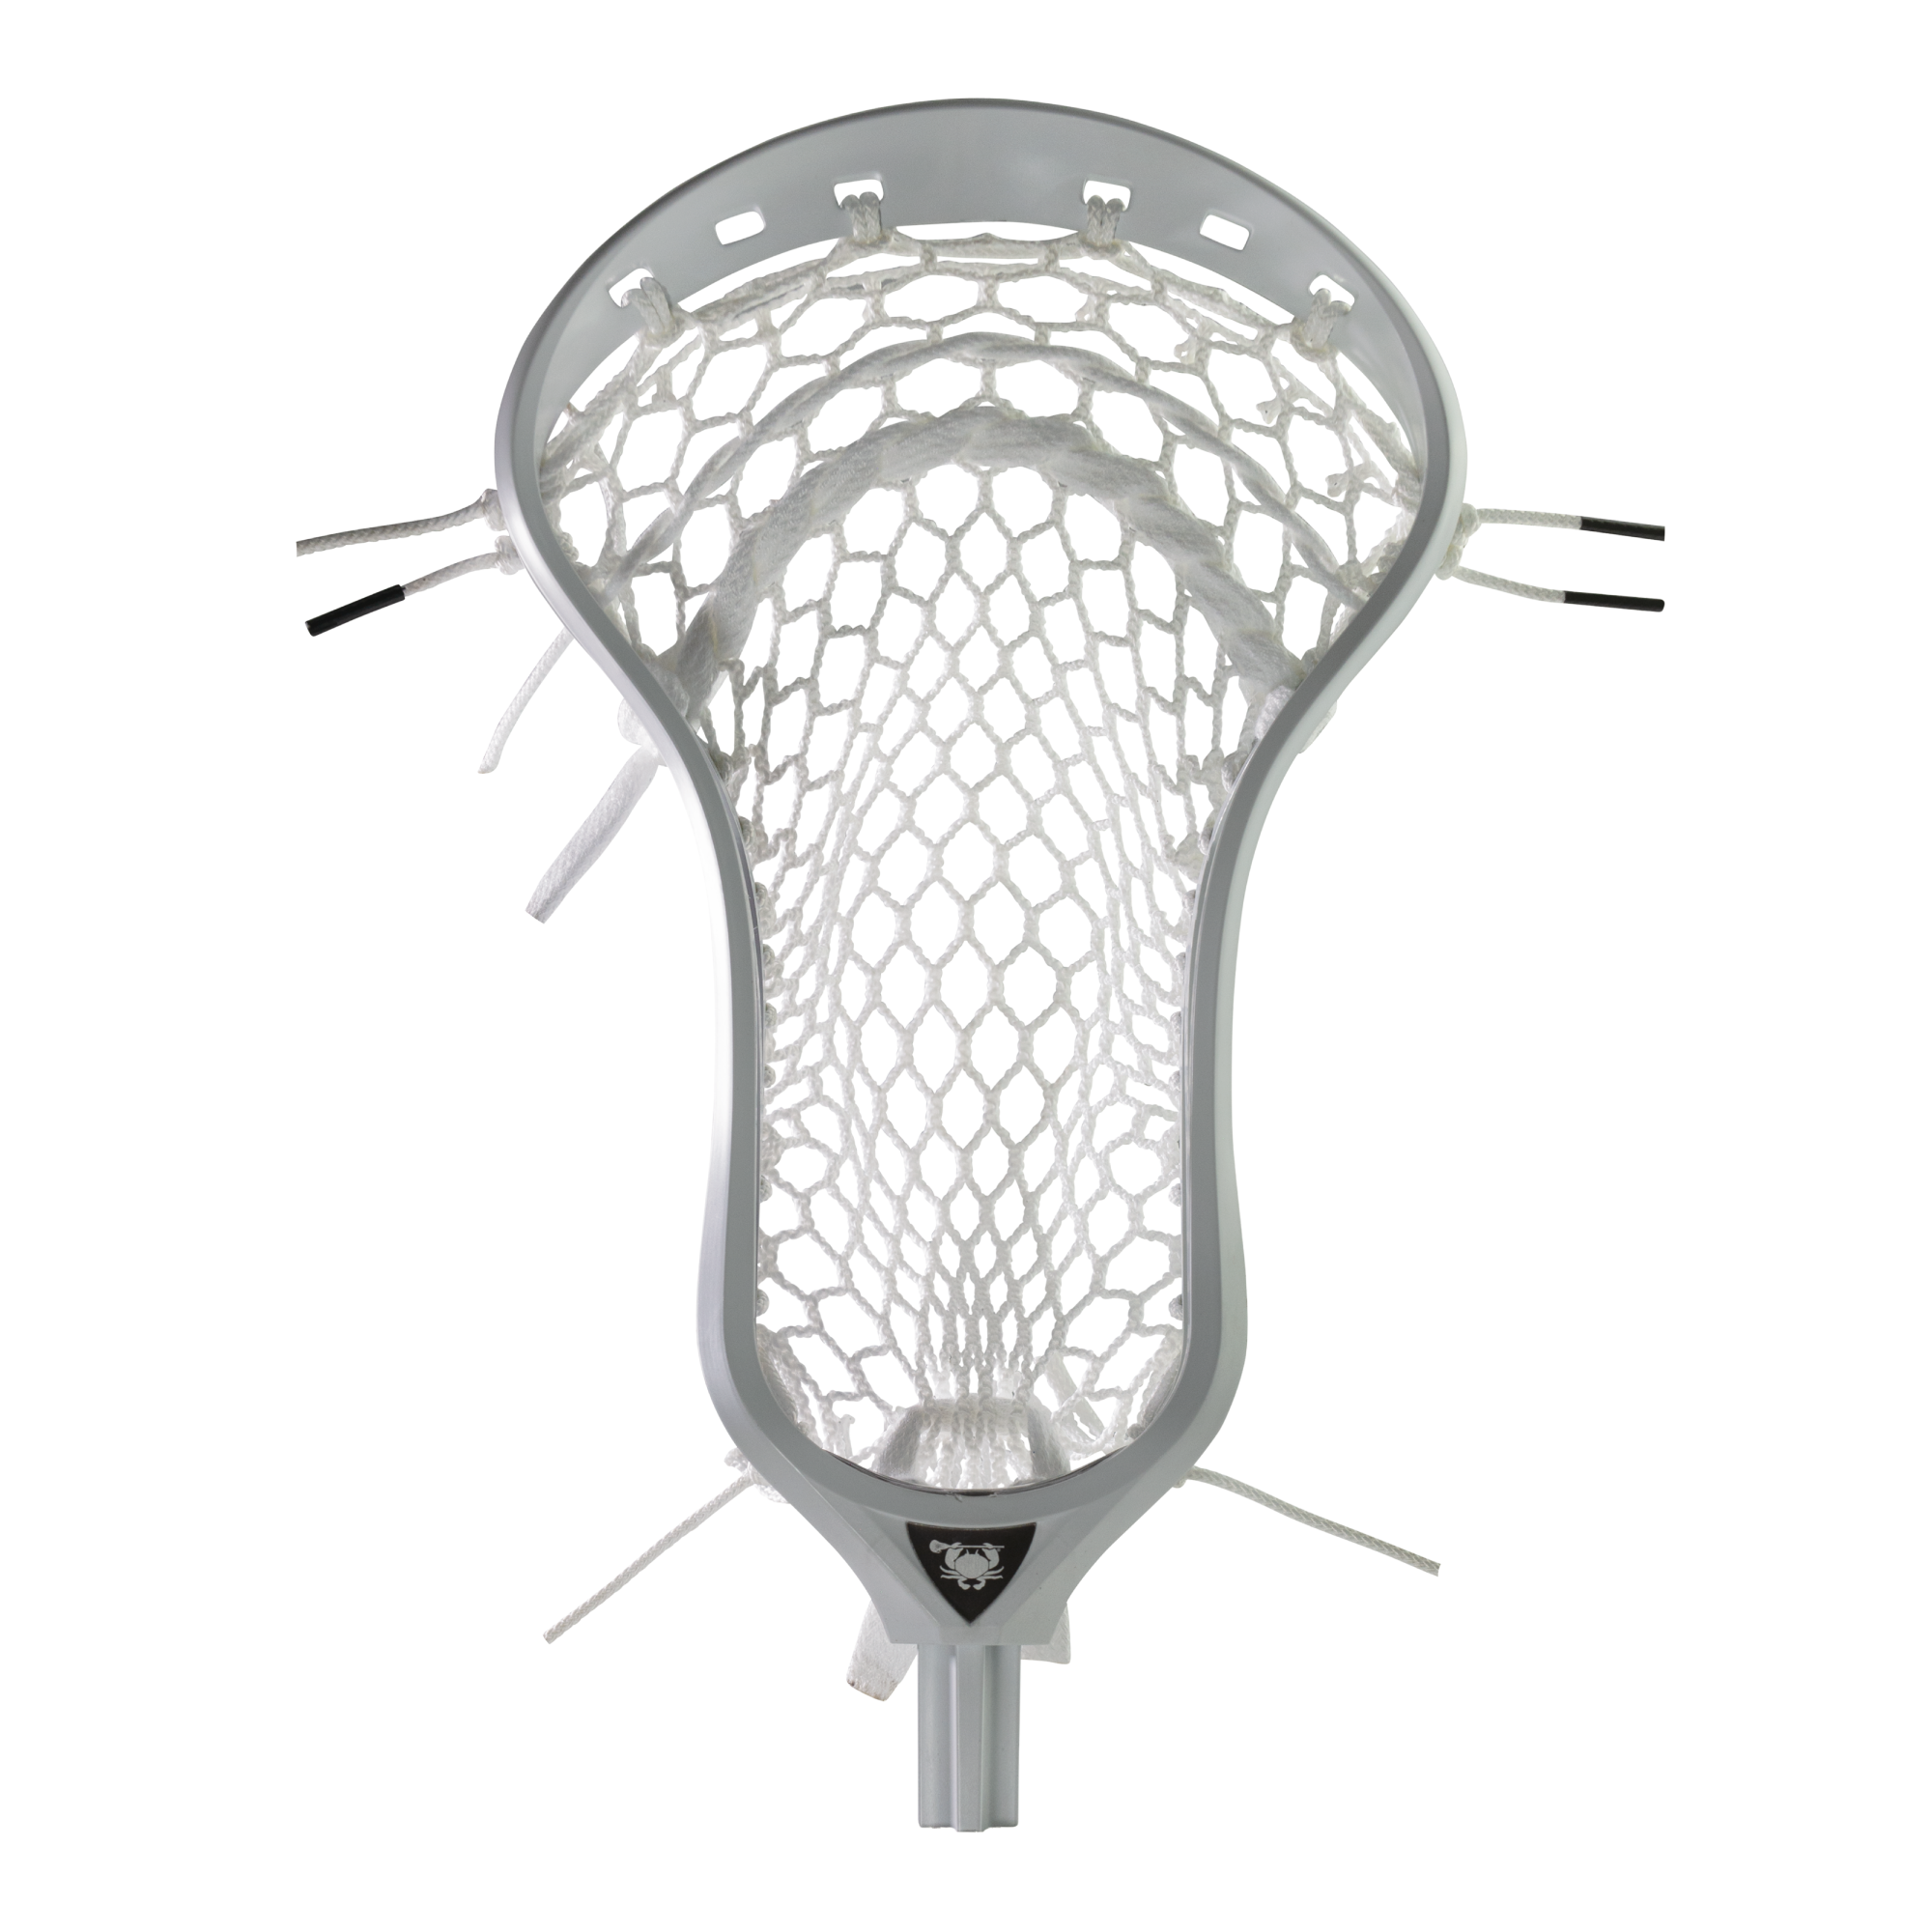 ECD Weapon X Elite Pocket Lacrosse Head-Universal Lacrosse